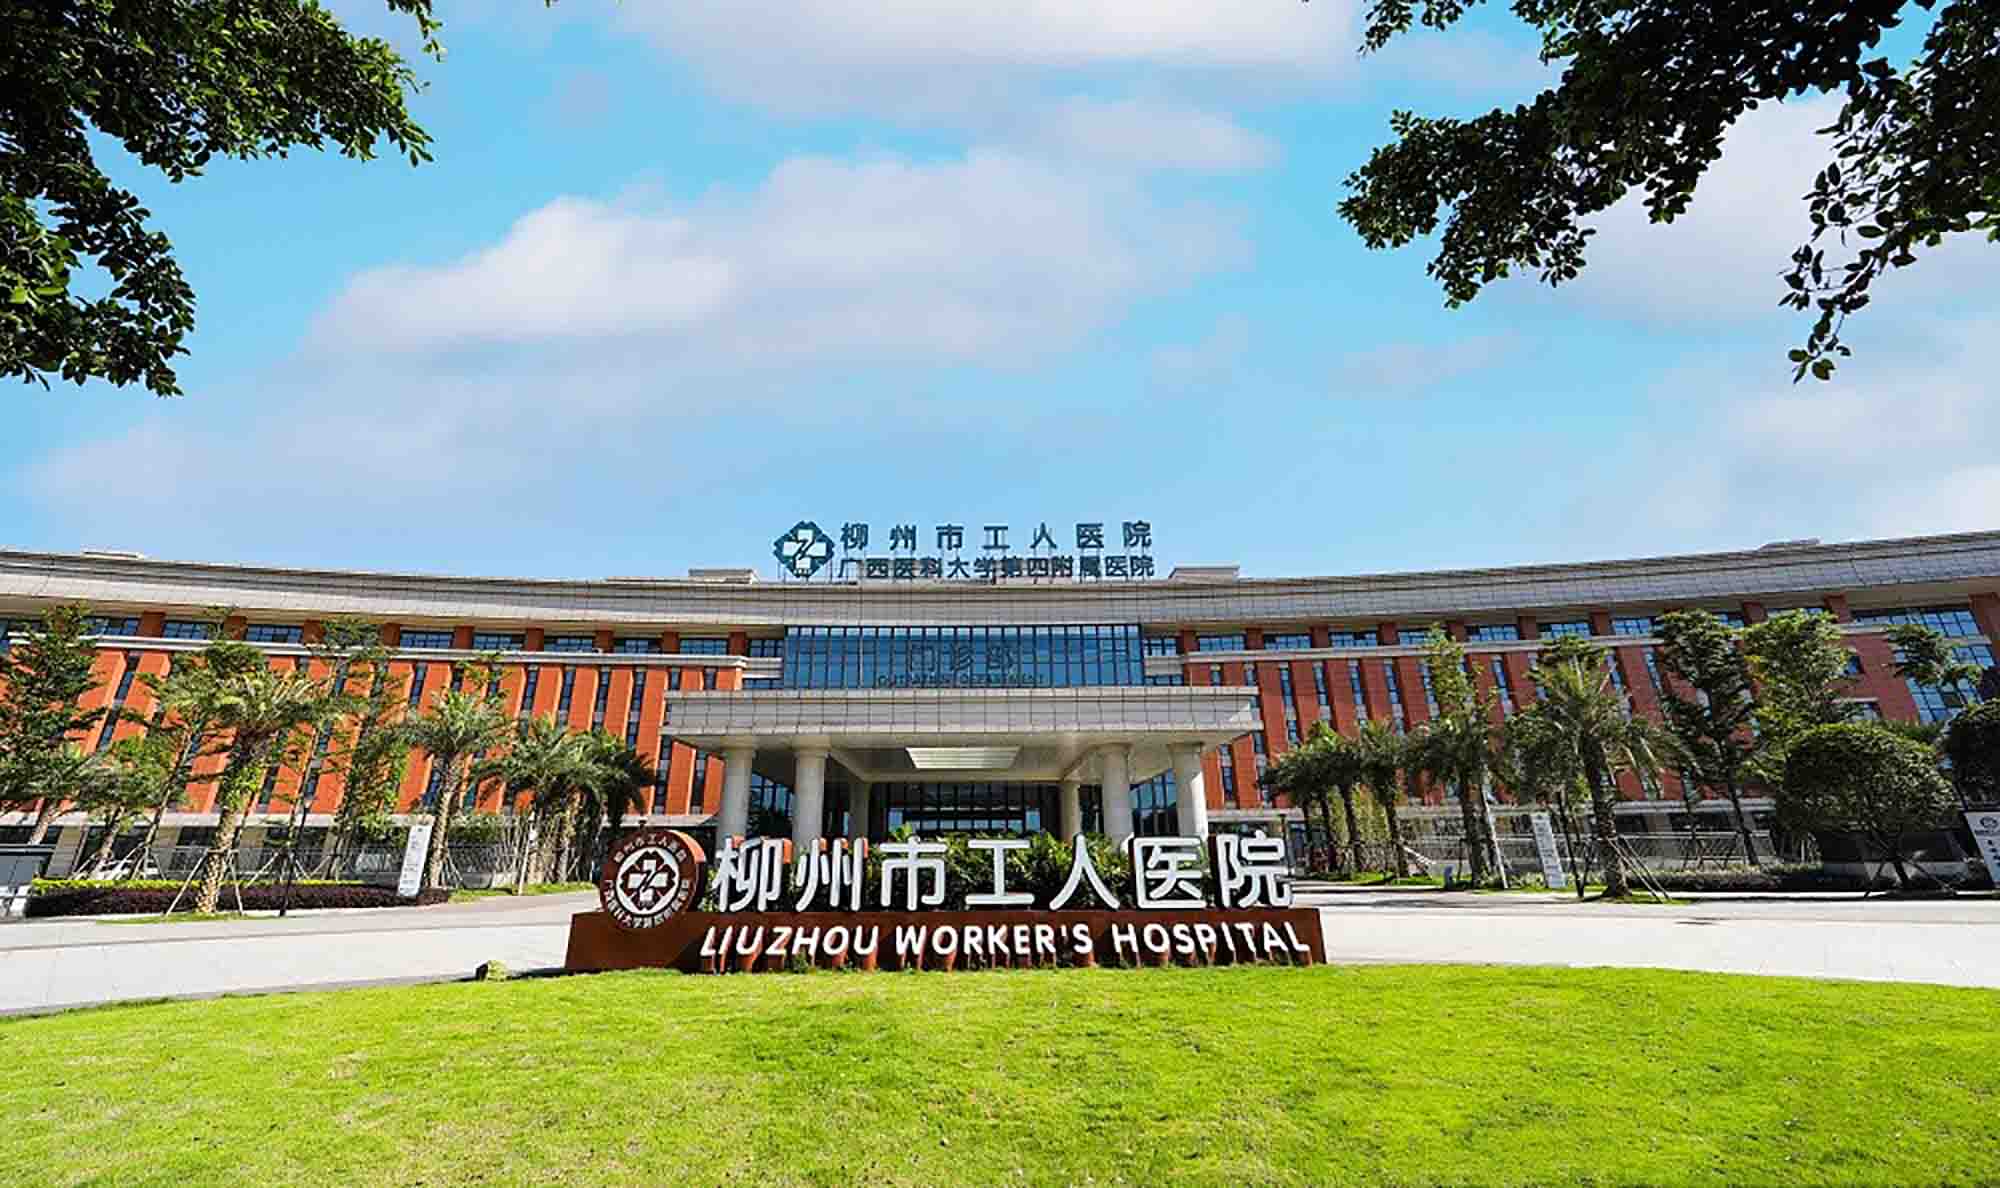 柳州市工人医院(新院)体检中心